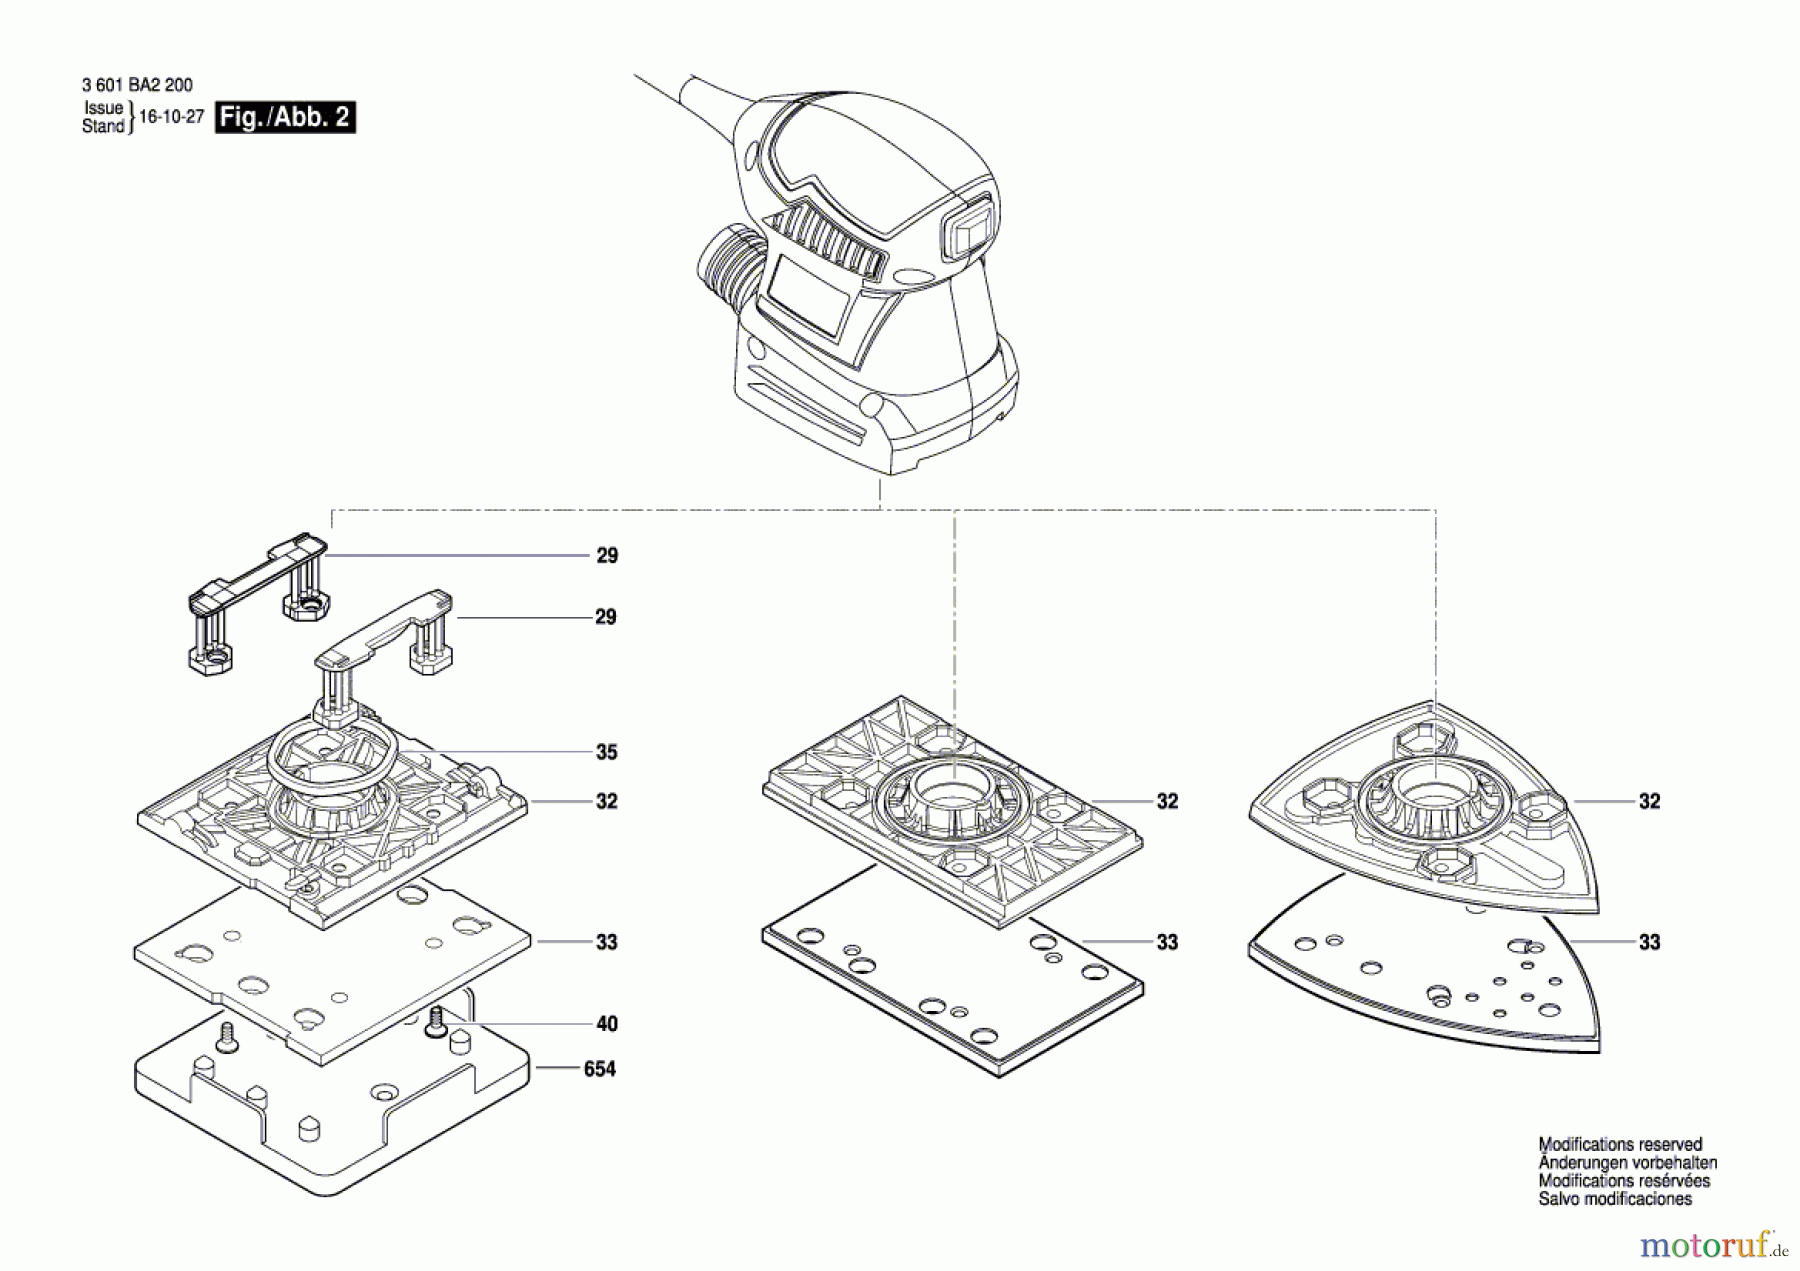  Bosch Werkzeug Schwingschleifer GSS 160-1 A Seite 2